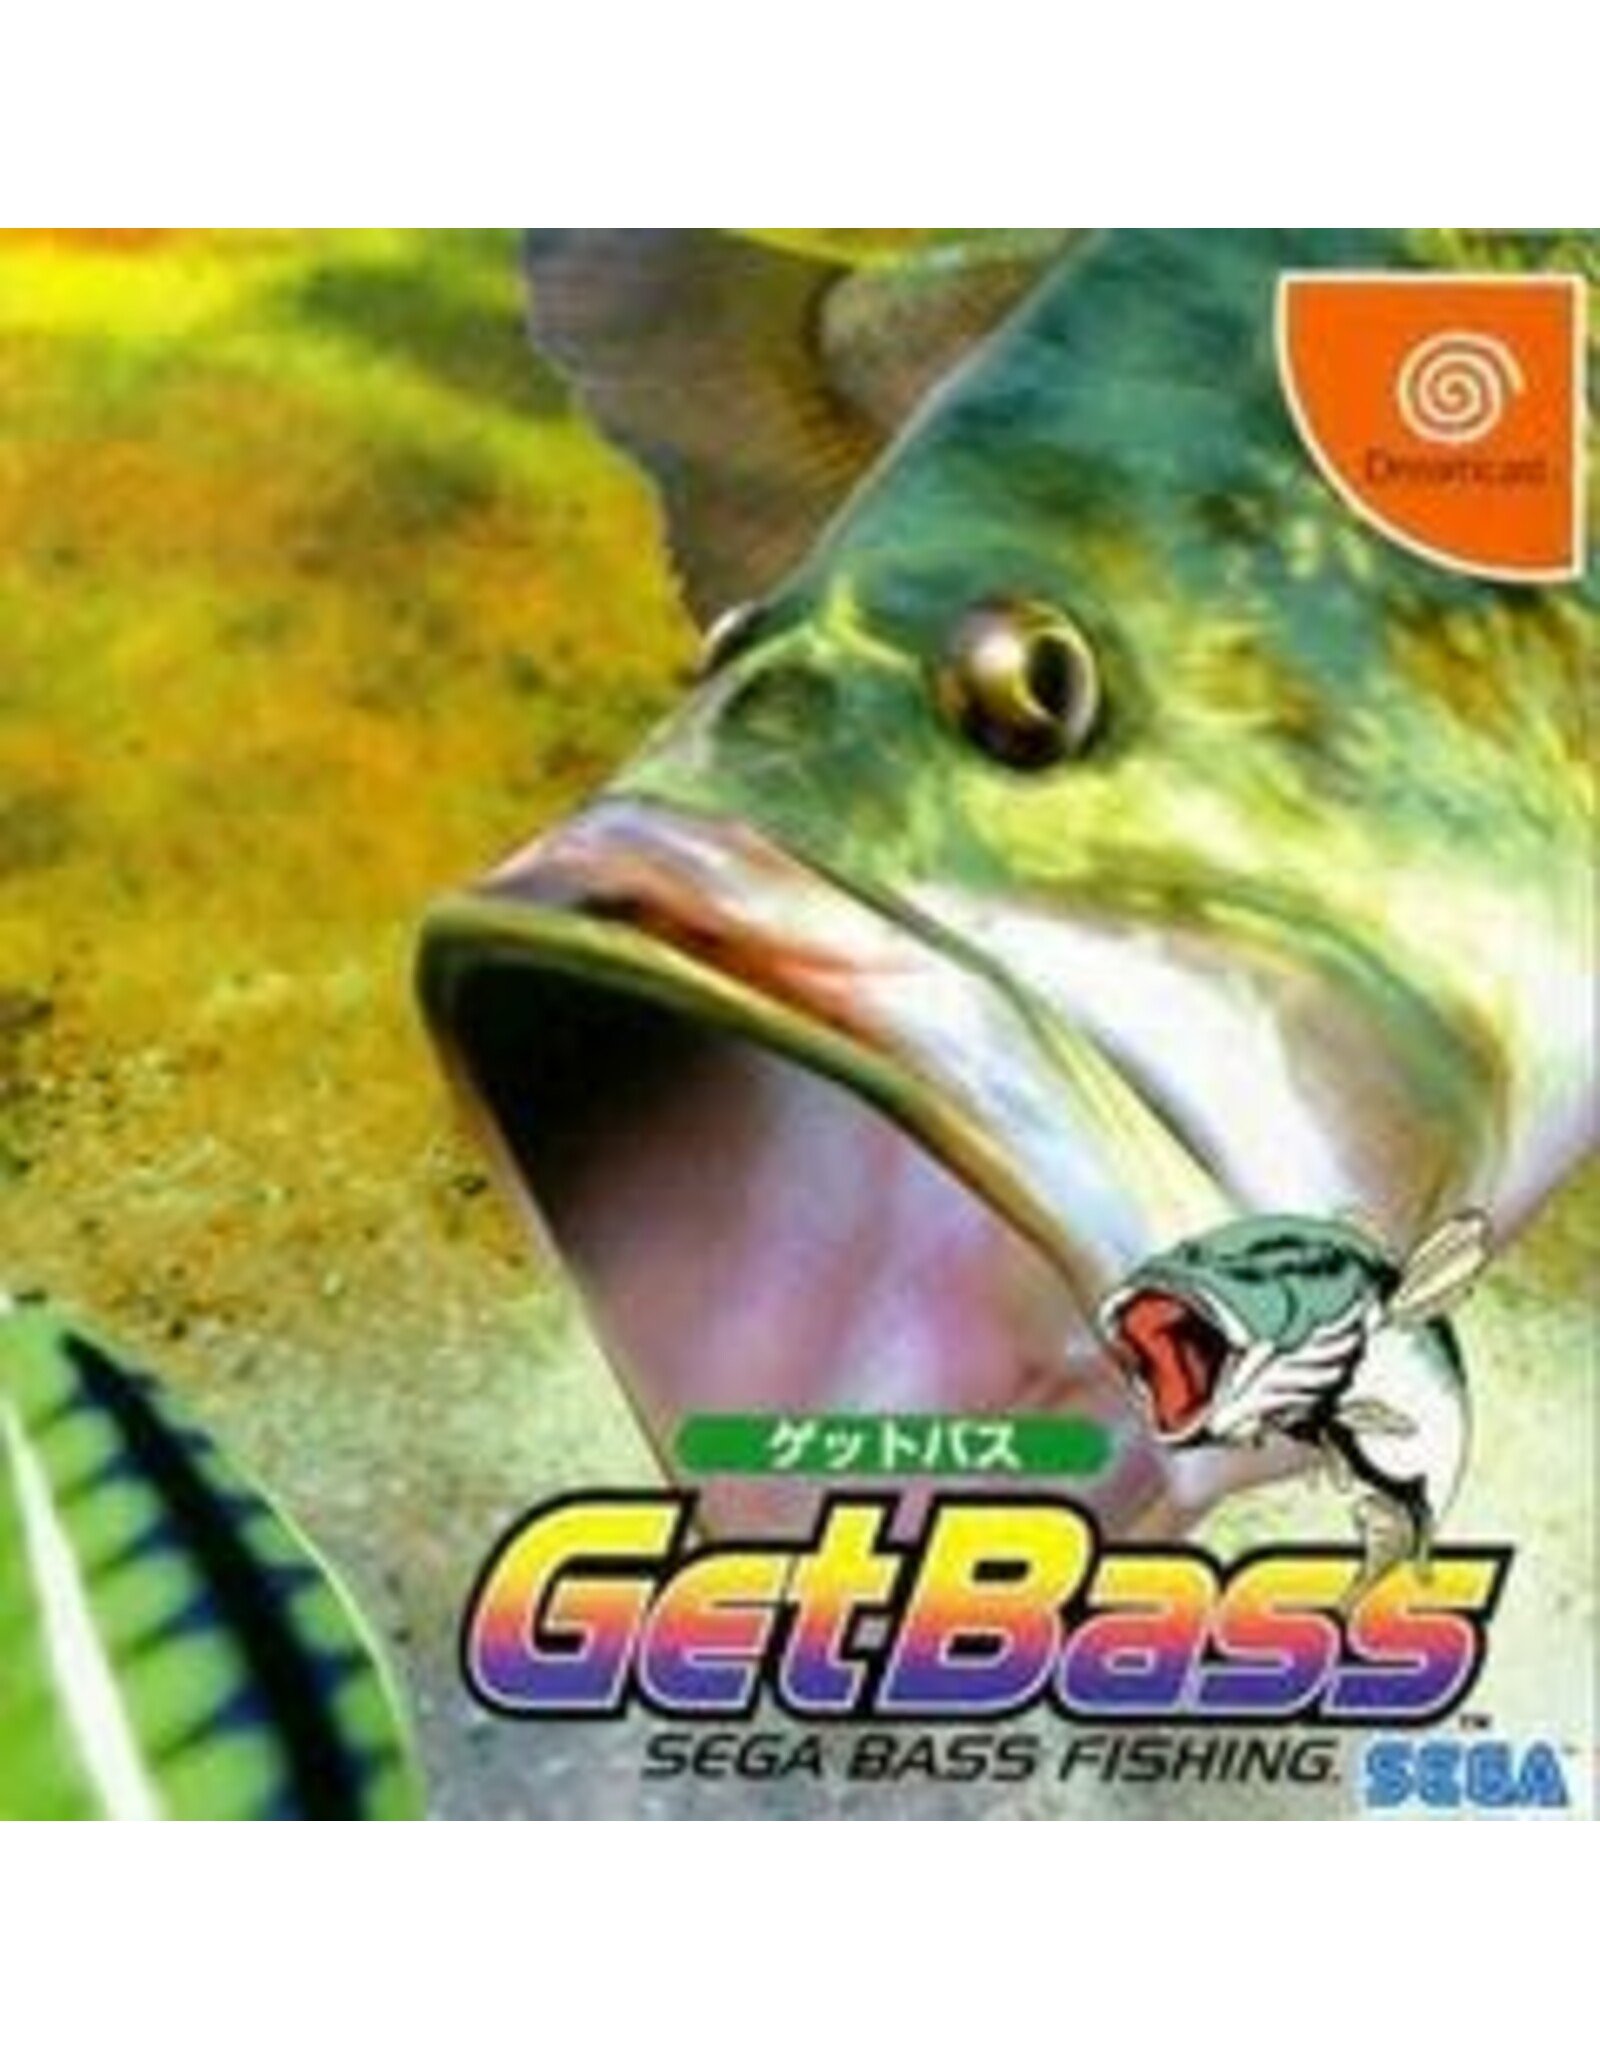 Sega Dreamcast Get Bass (CiB, Missing Obi Strip, JP Import) - Video Game  Trader